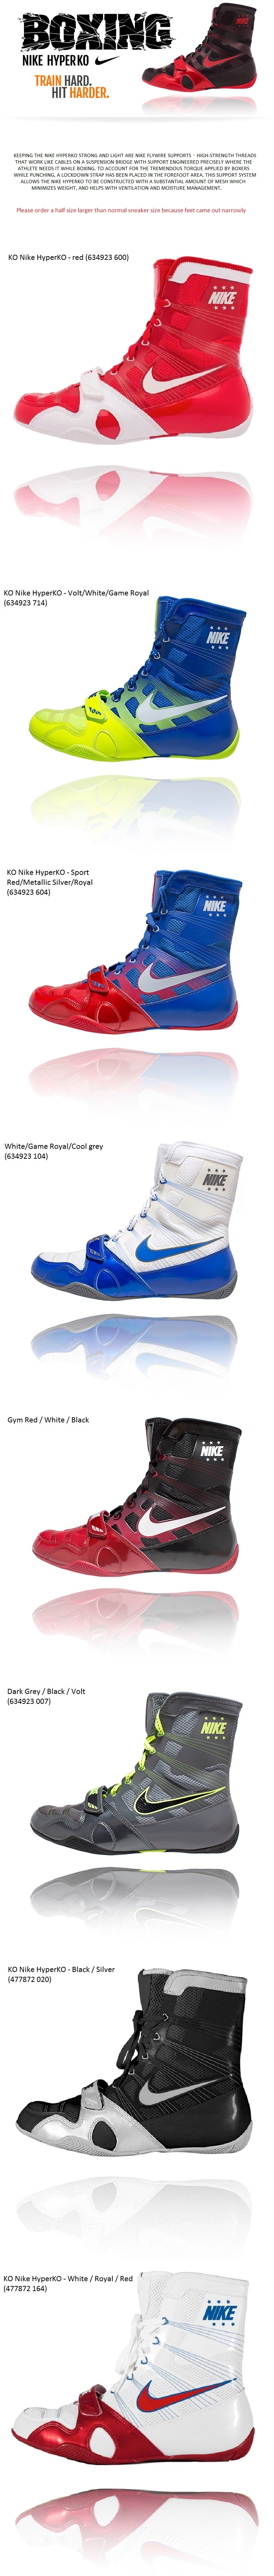 Para Hombres Zapatos de boxeo KO Nike hyperko Sports | eBay